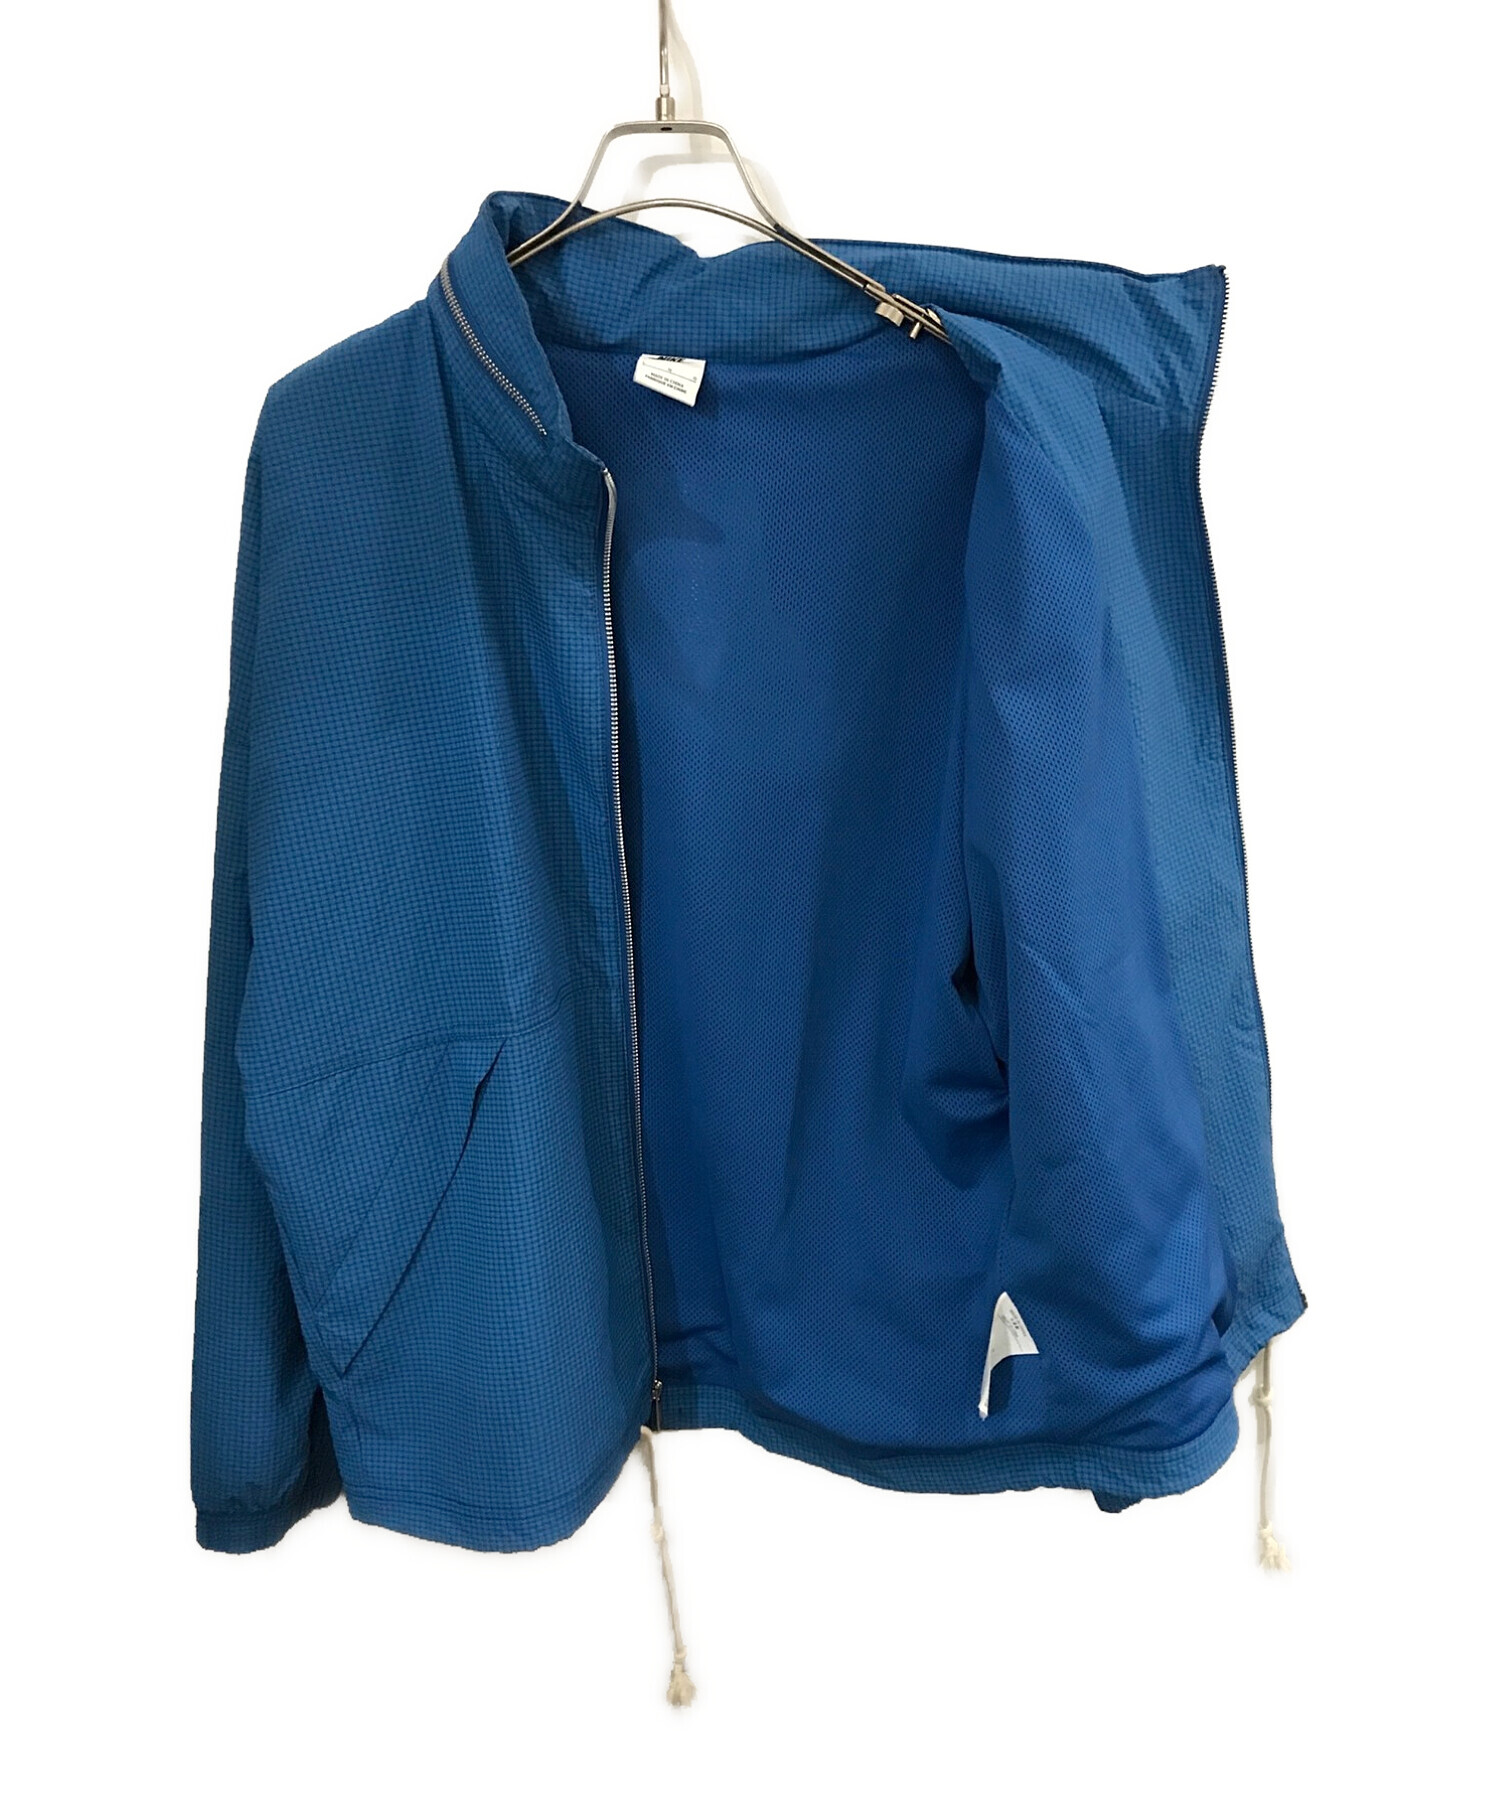 NIKE (ナイキ) TREND ウーブン ジャケット ブルー サイズ:L